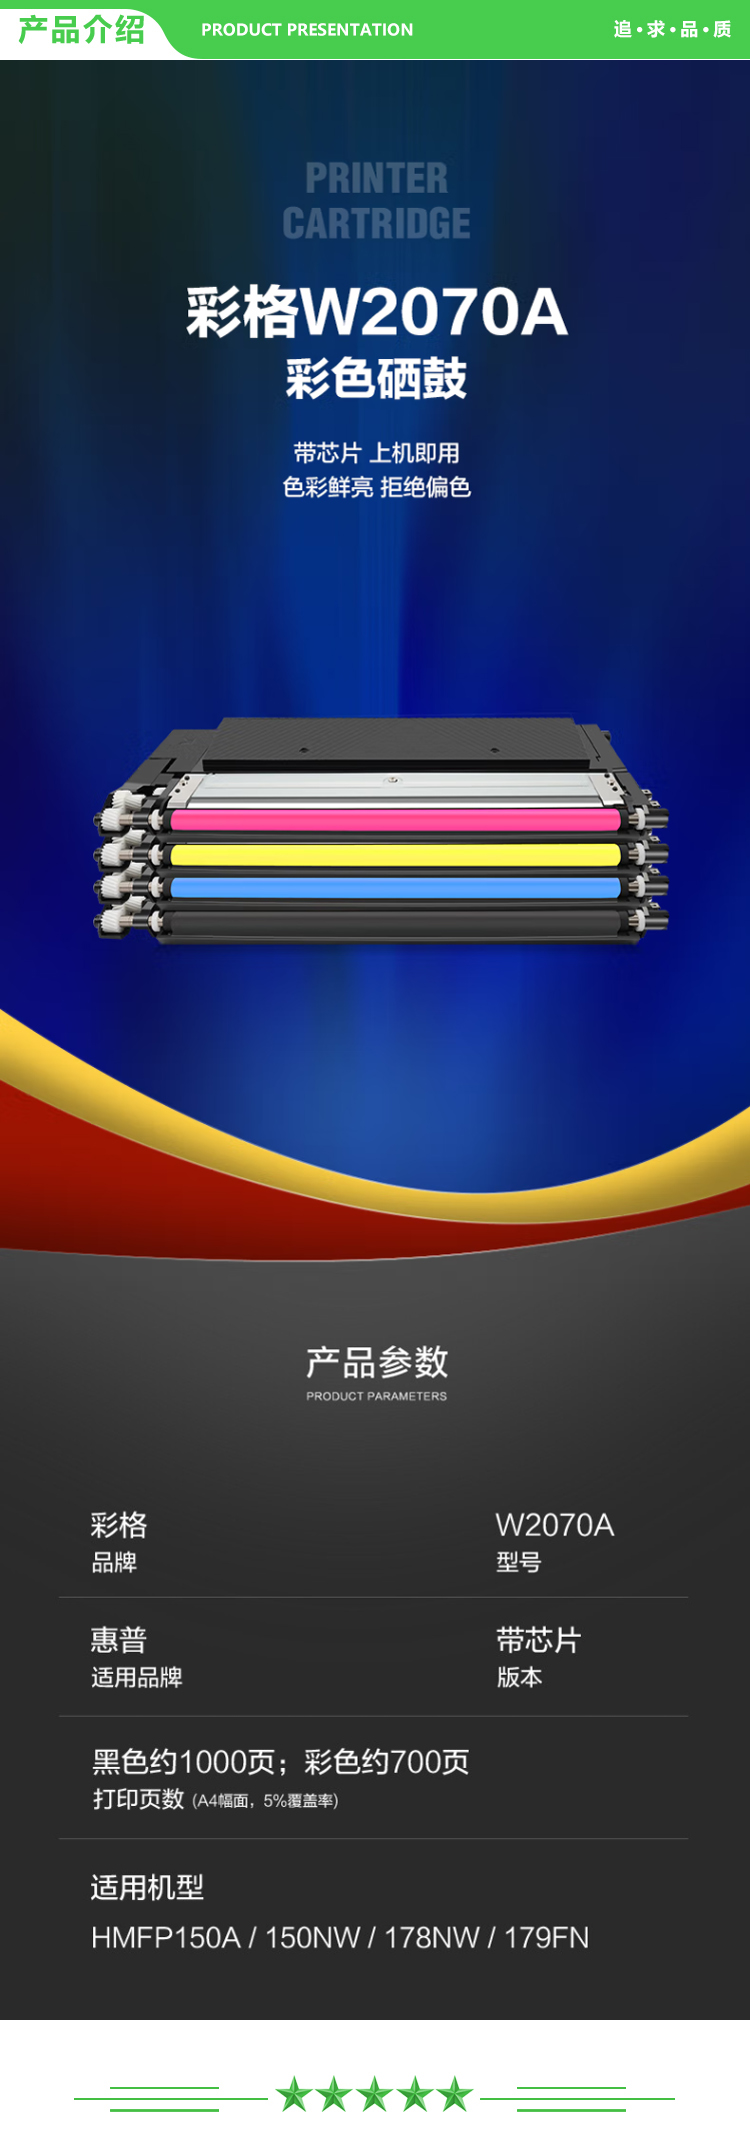 彩格 W2070A 粉盒四色套装 3100页 适用惠普HP117A硒鼓 MFP150A 150NW 178NW 179FNW打印机墨盒带芯片.jpg